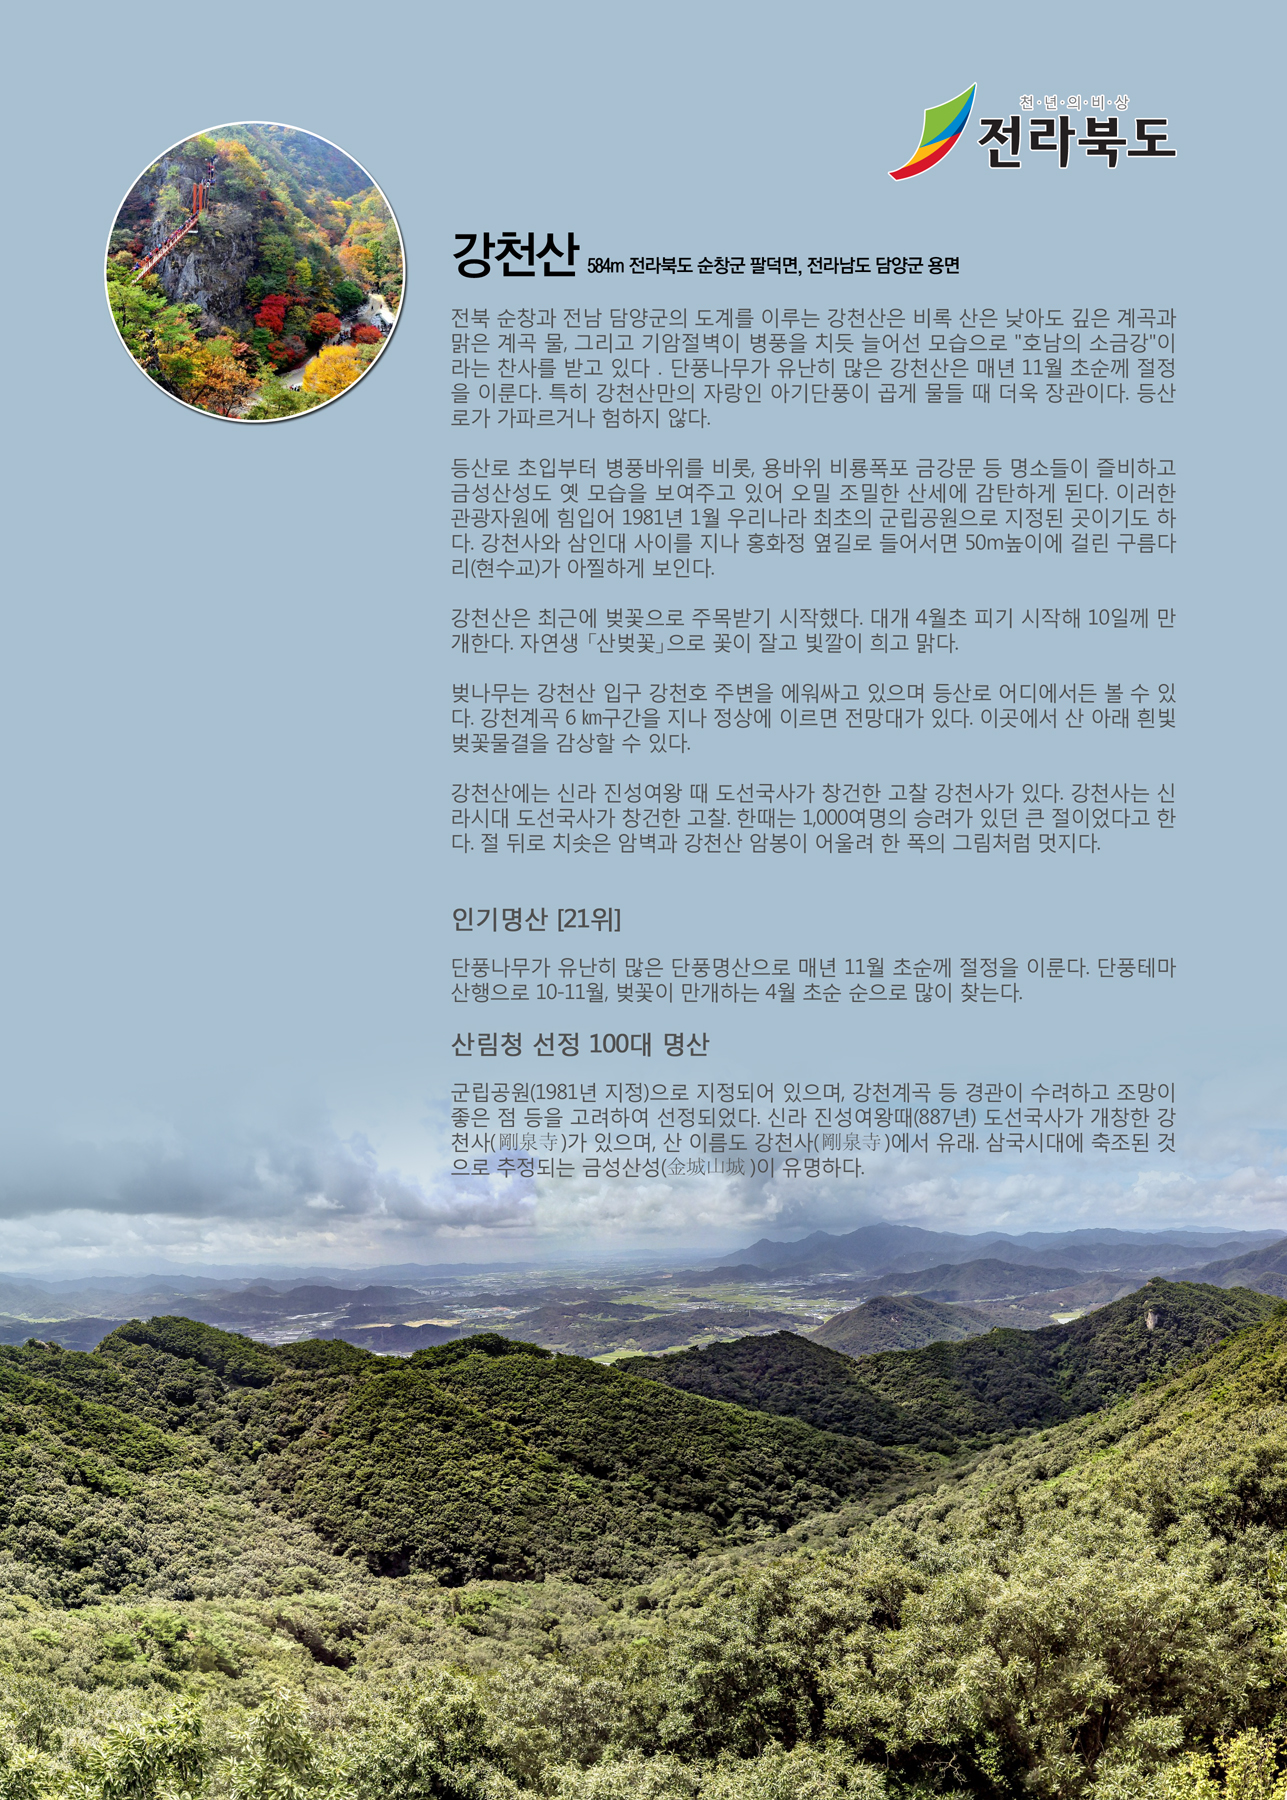 강천산(해발 584m) 전북 순창군&전남 담양군